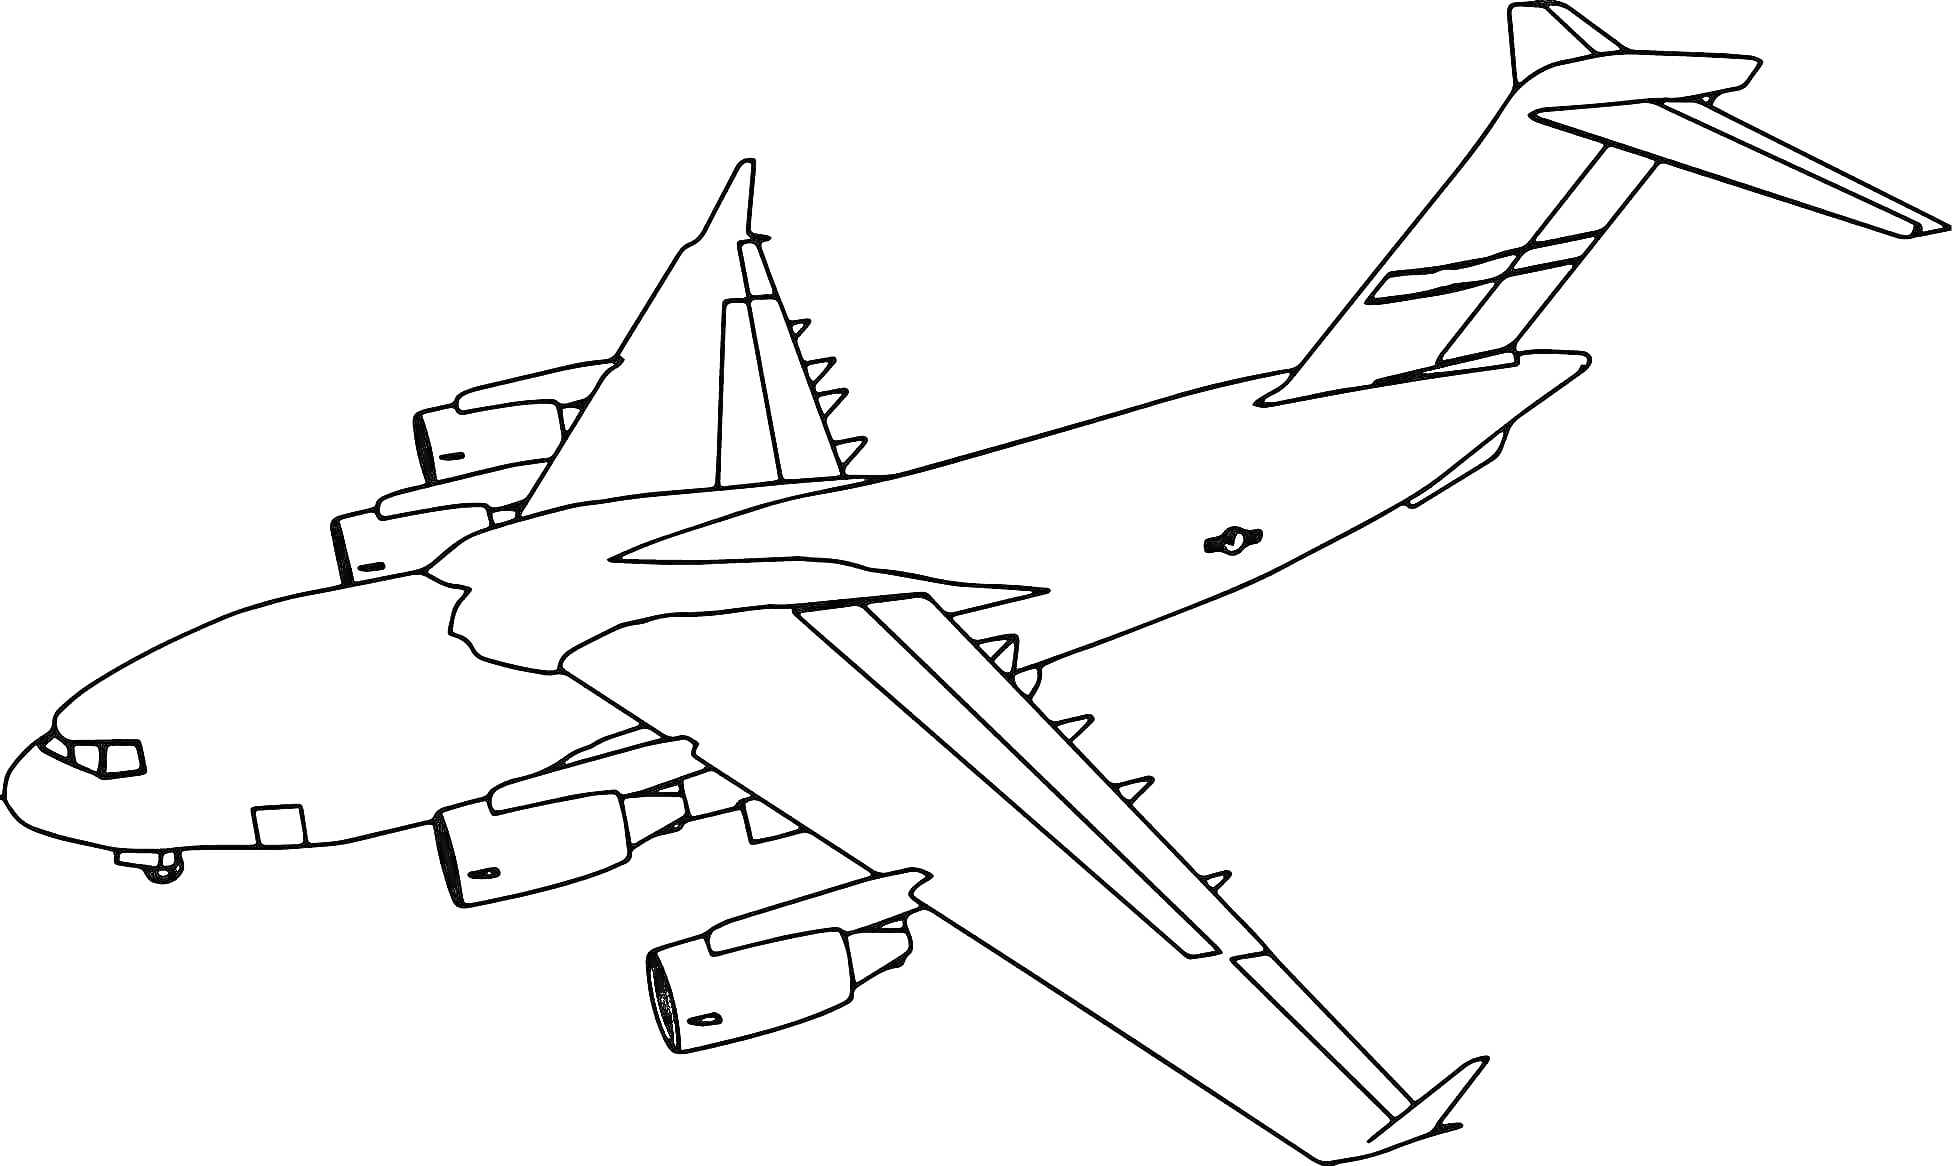 Пассажирский самолет с крыльями, шасси и двигателями